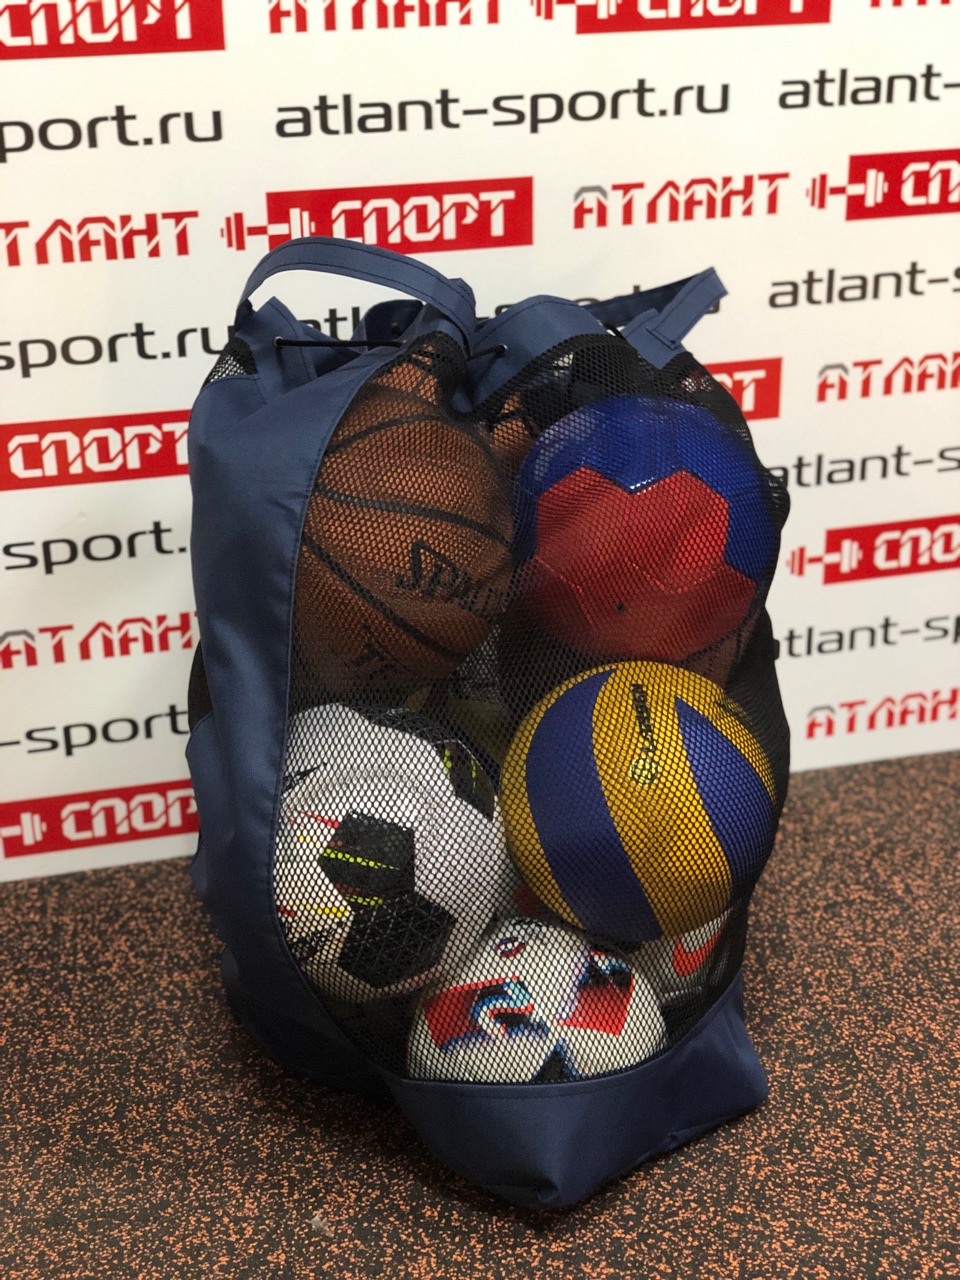 Мячи для Федерации футбола г.Ярославля